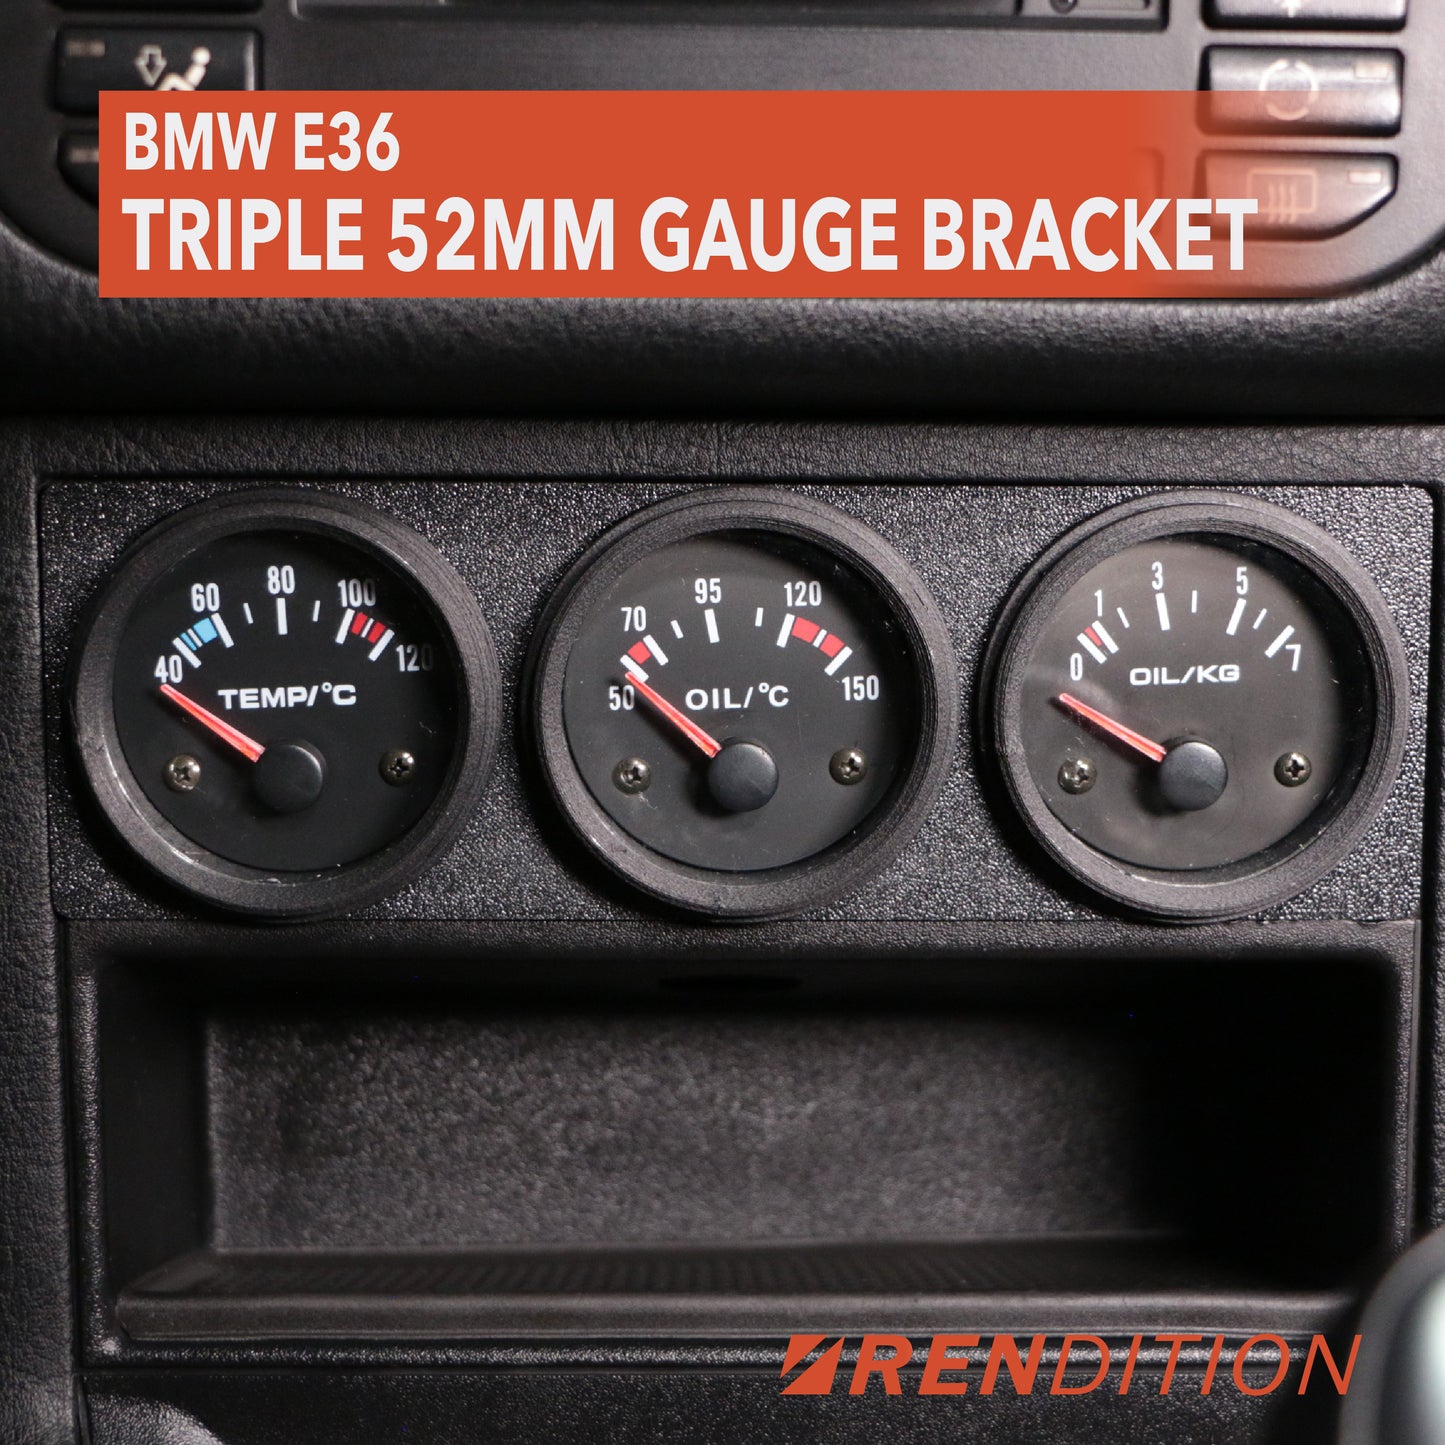 BMW E36 TRIPLE 52MM GAUGE BRACKET